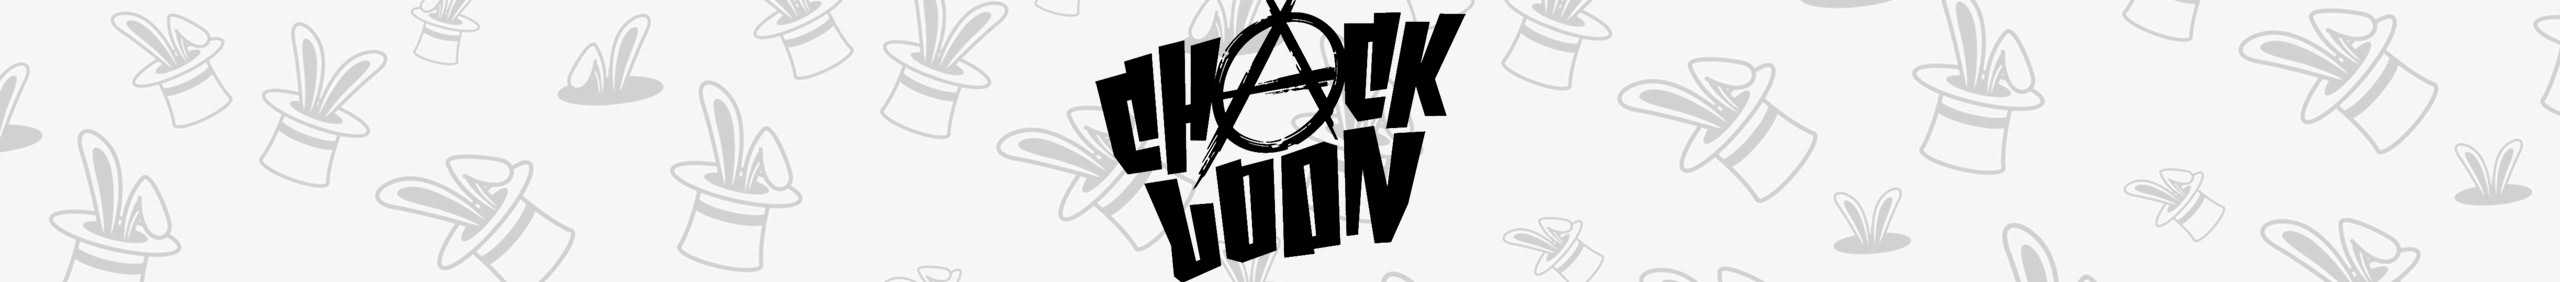 Profil-Banner von Chack Loon